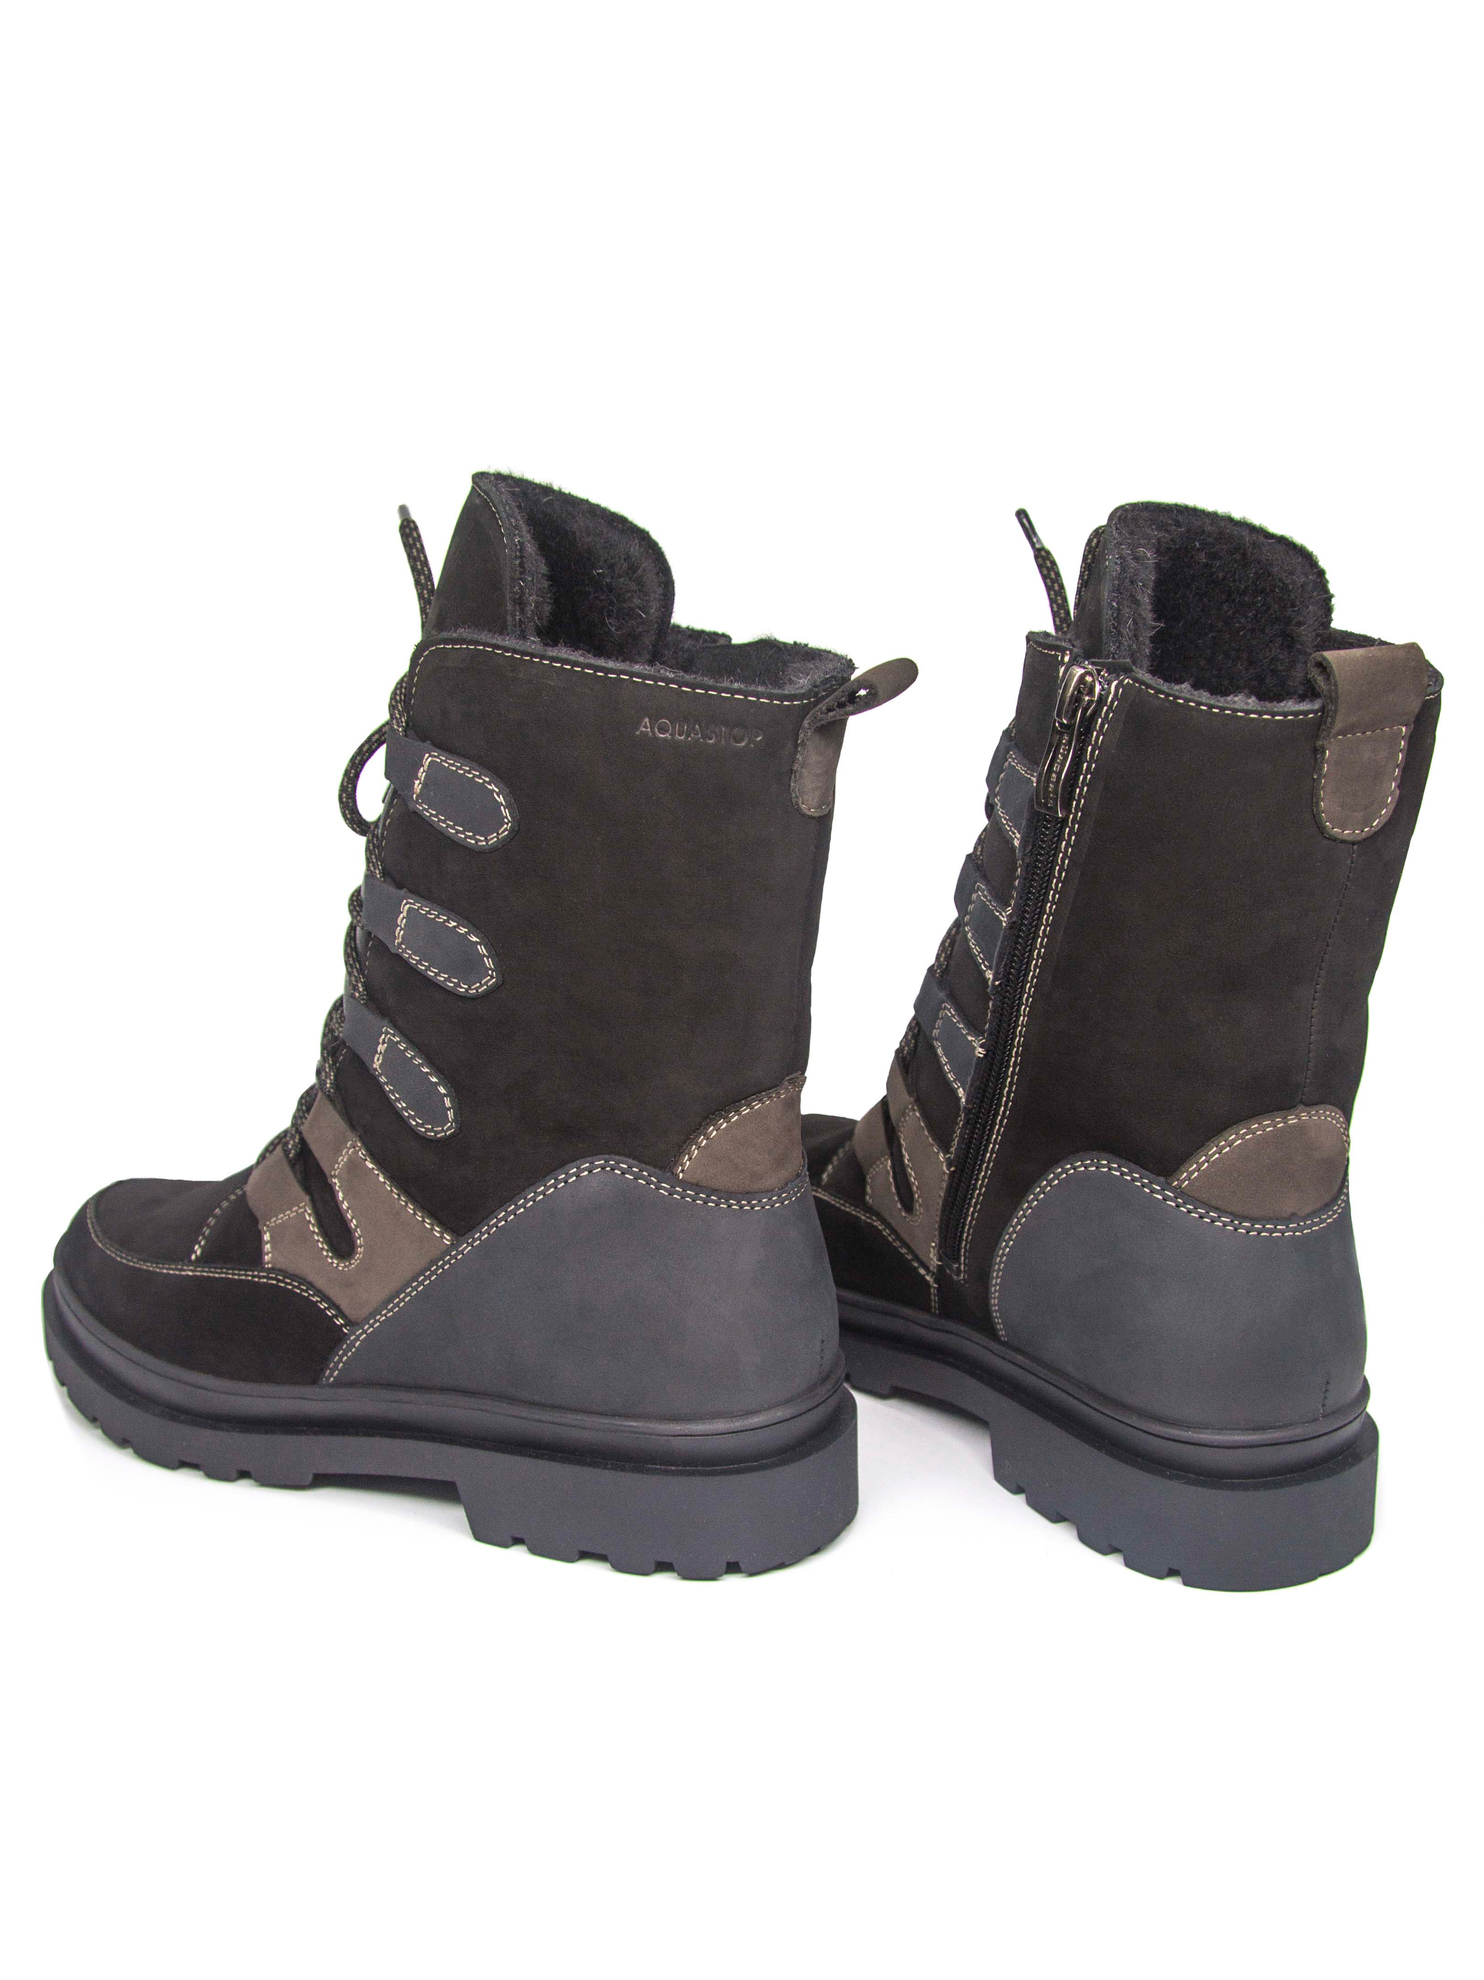 валберис обувь женская зима ботинки интернет магазин